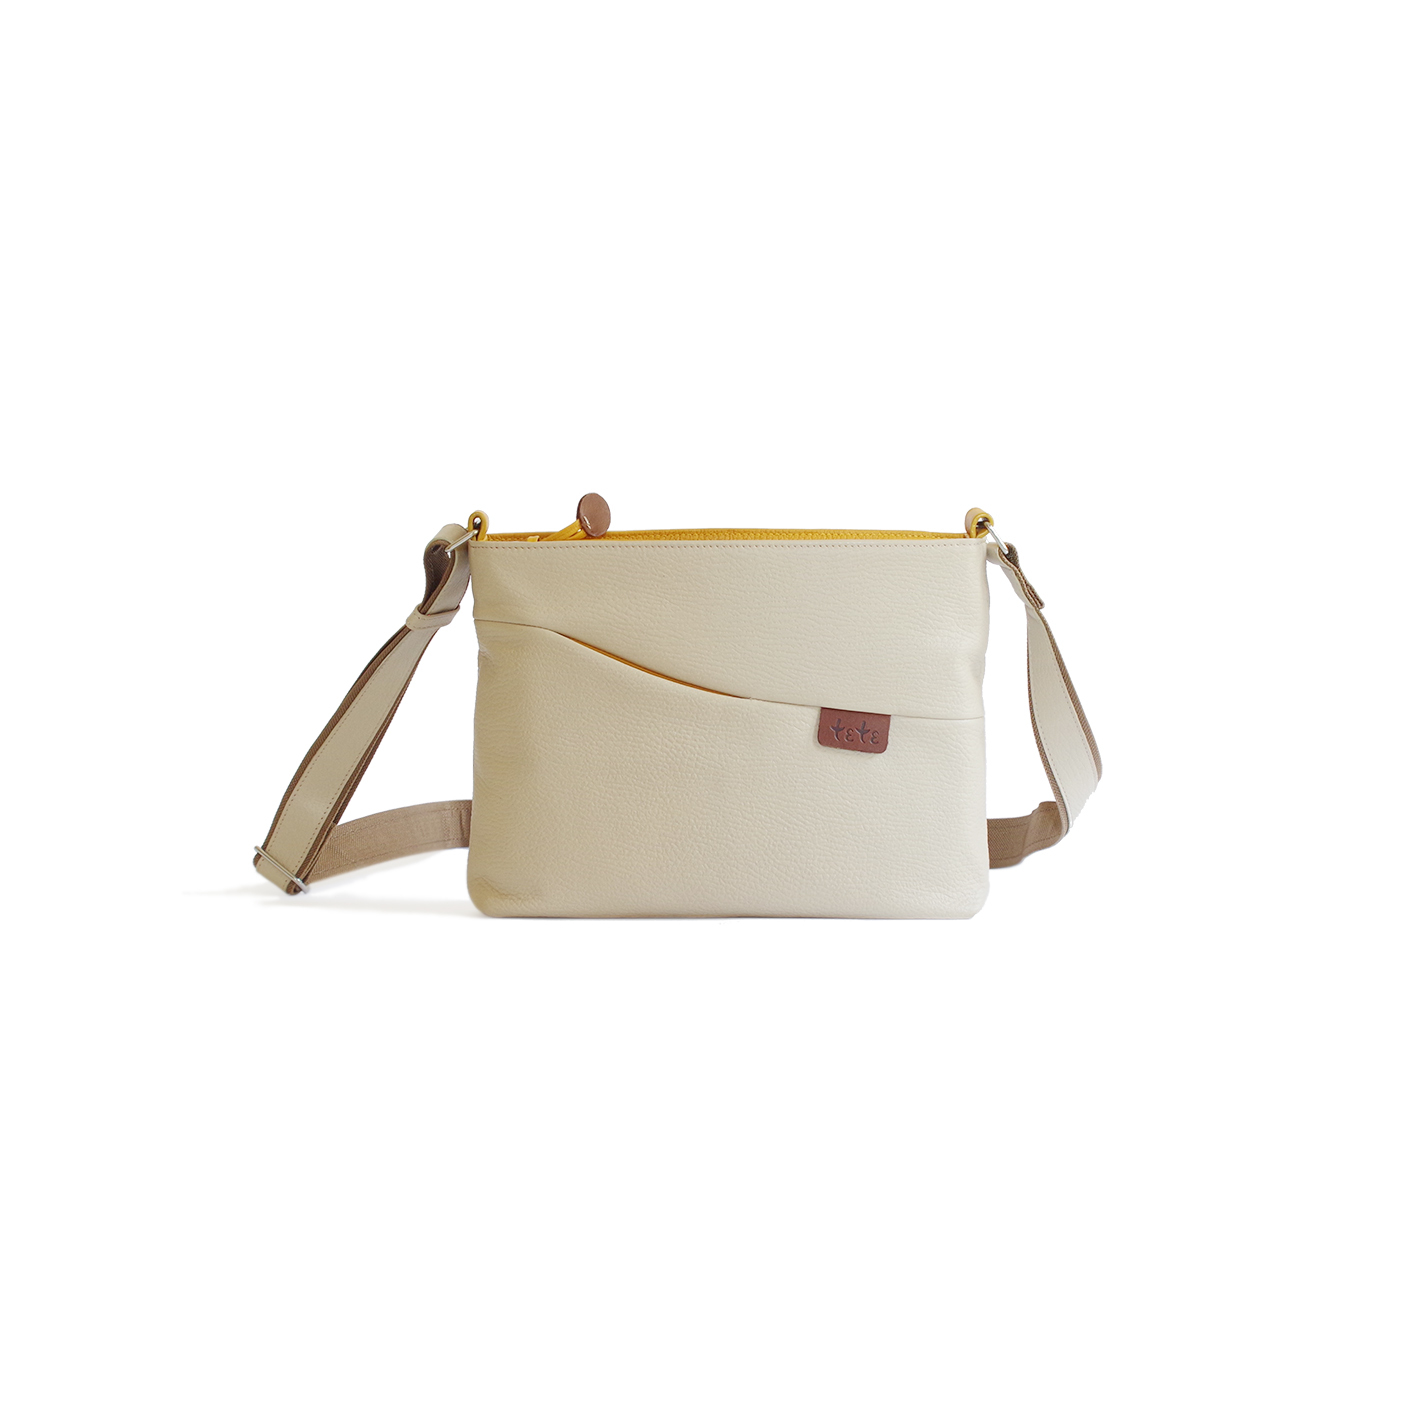 袋果 Newポシェット ホワイト 旅行に便利なショルダーバッグ Tete Bag